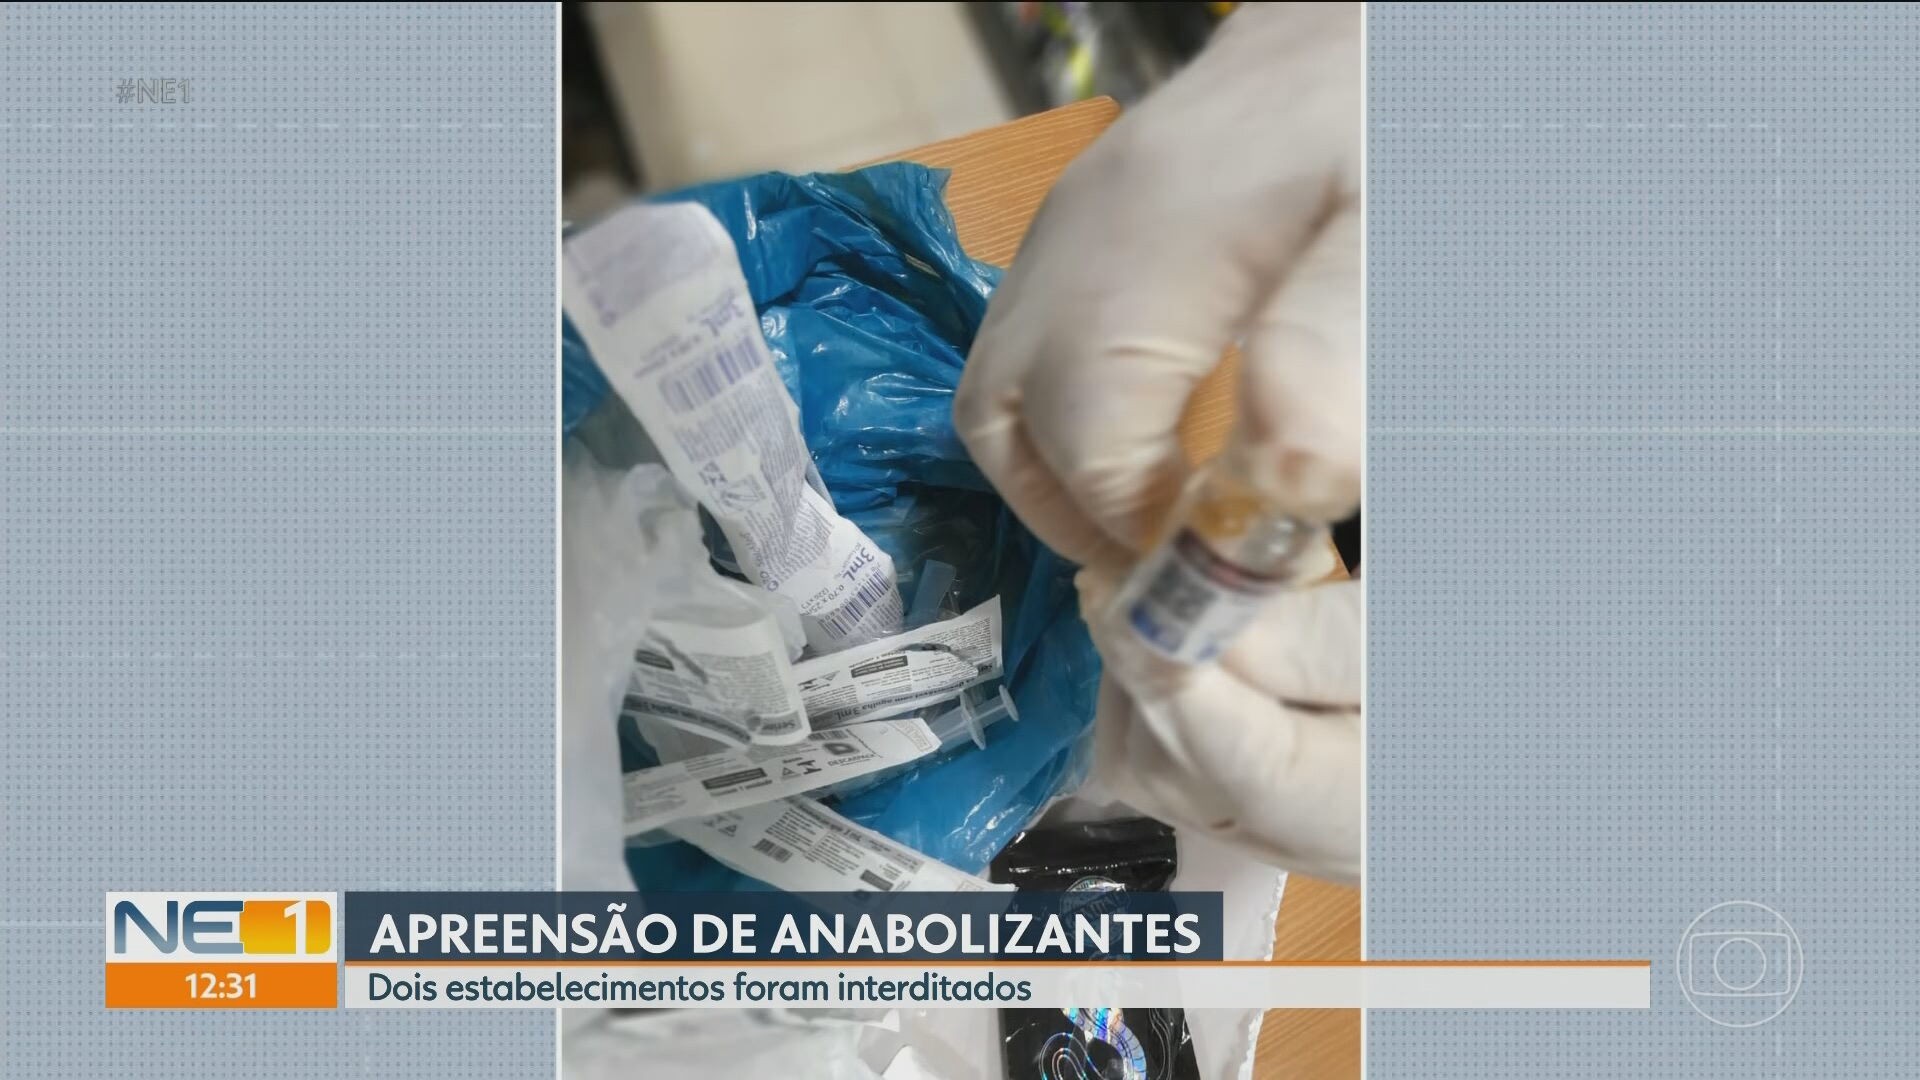 Duas pessoas são presas em flagrante por venderem e aplicarem anabolizantes em lojas do Recife